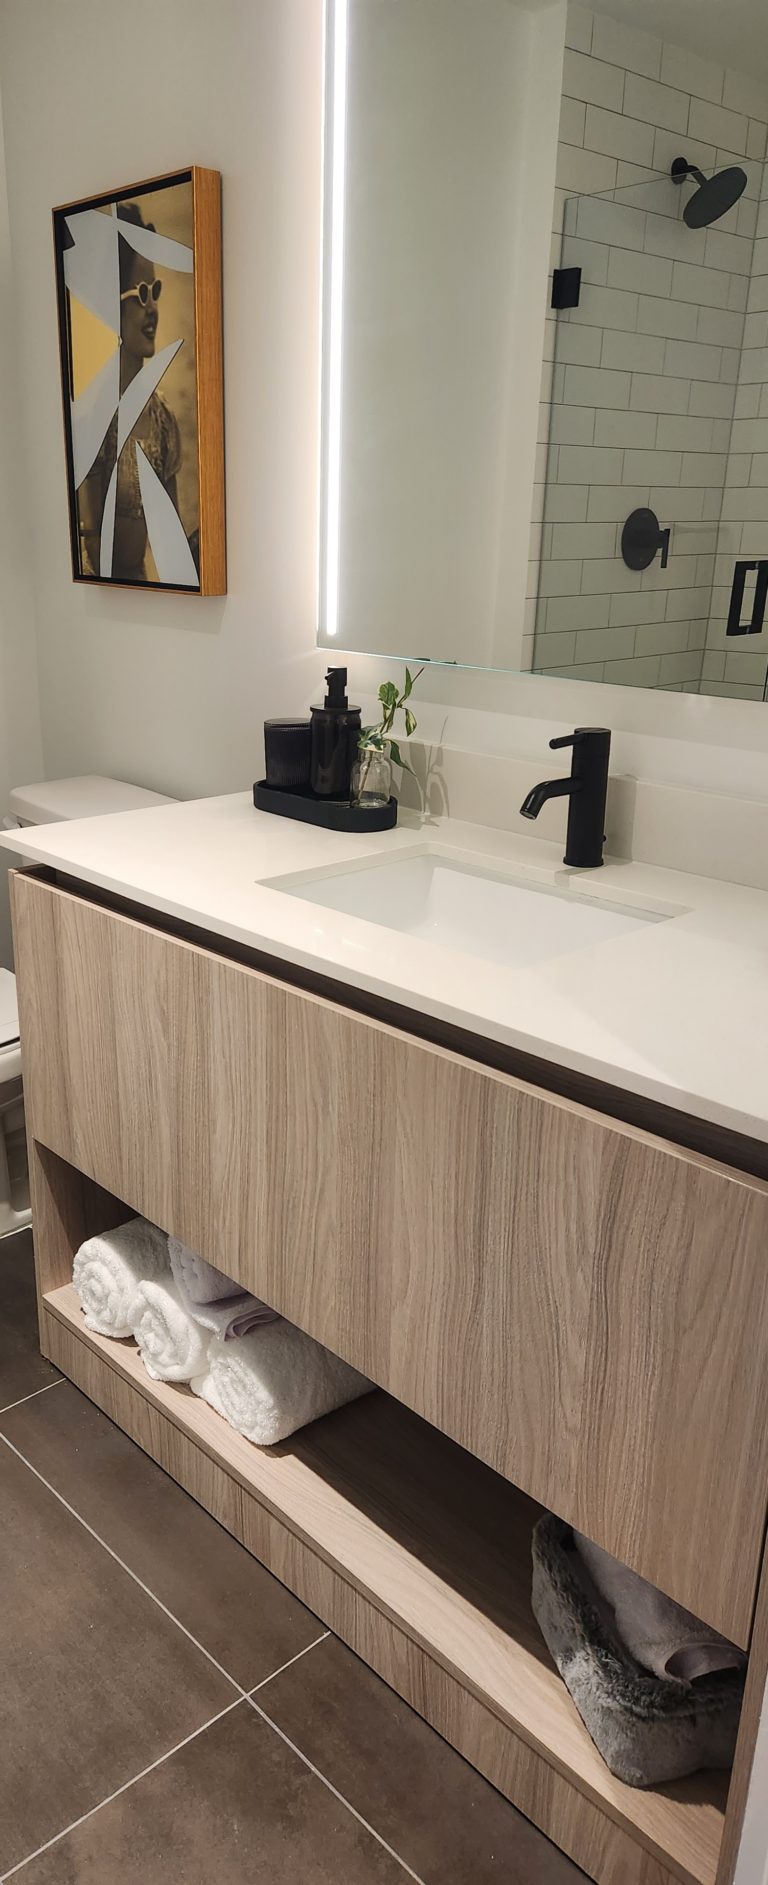 Bathrooms-vanities-and-countertops Advisor